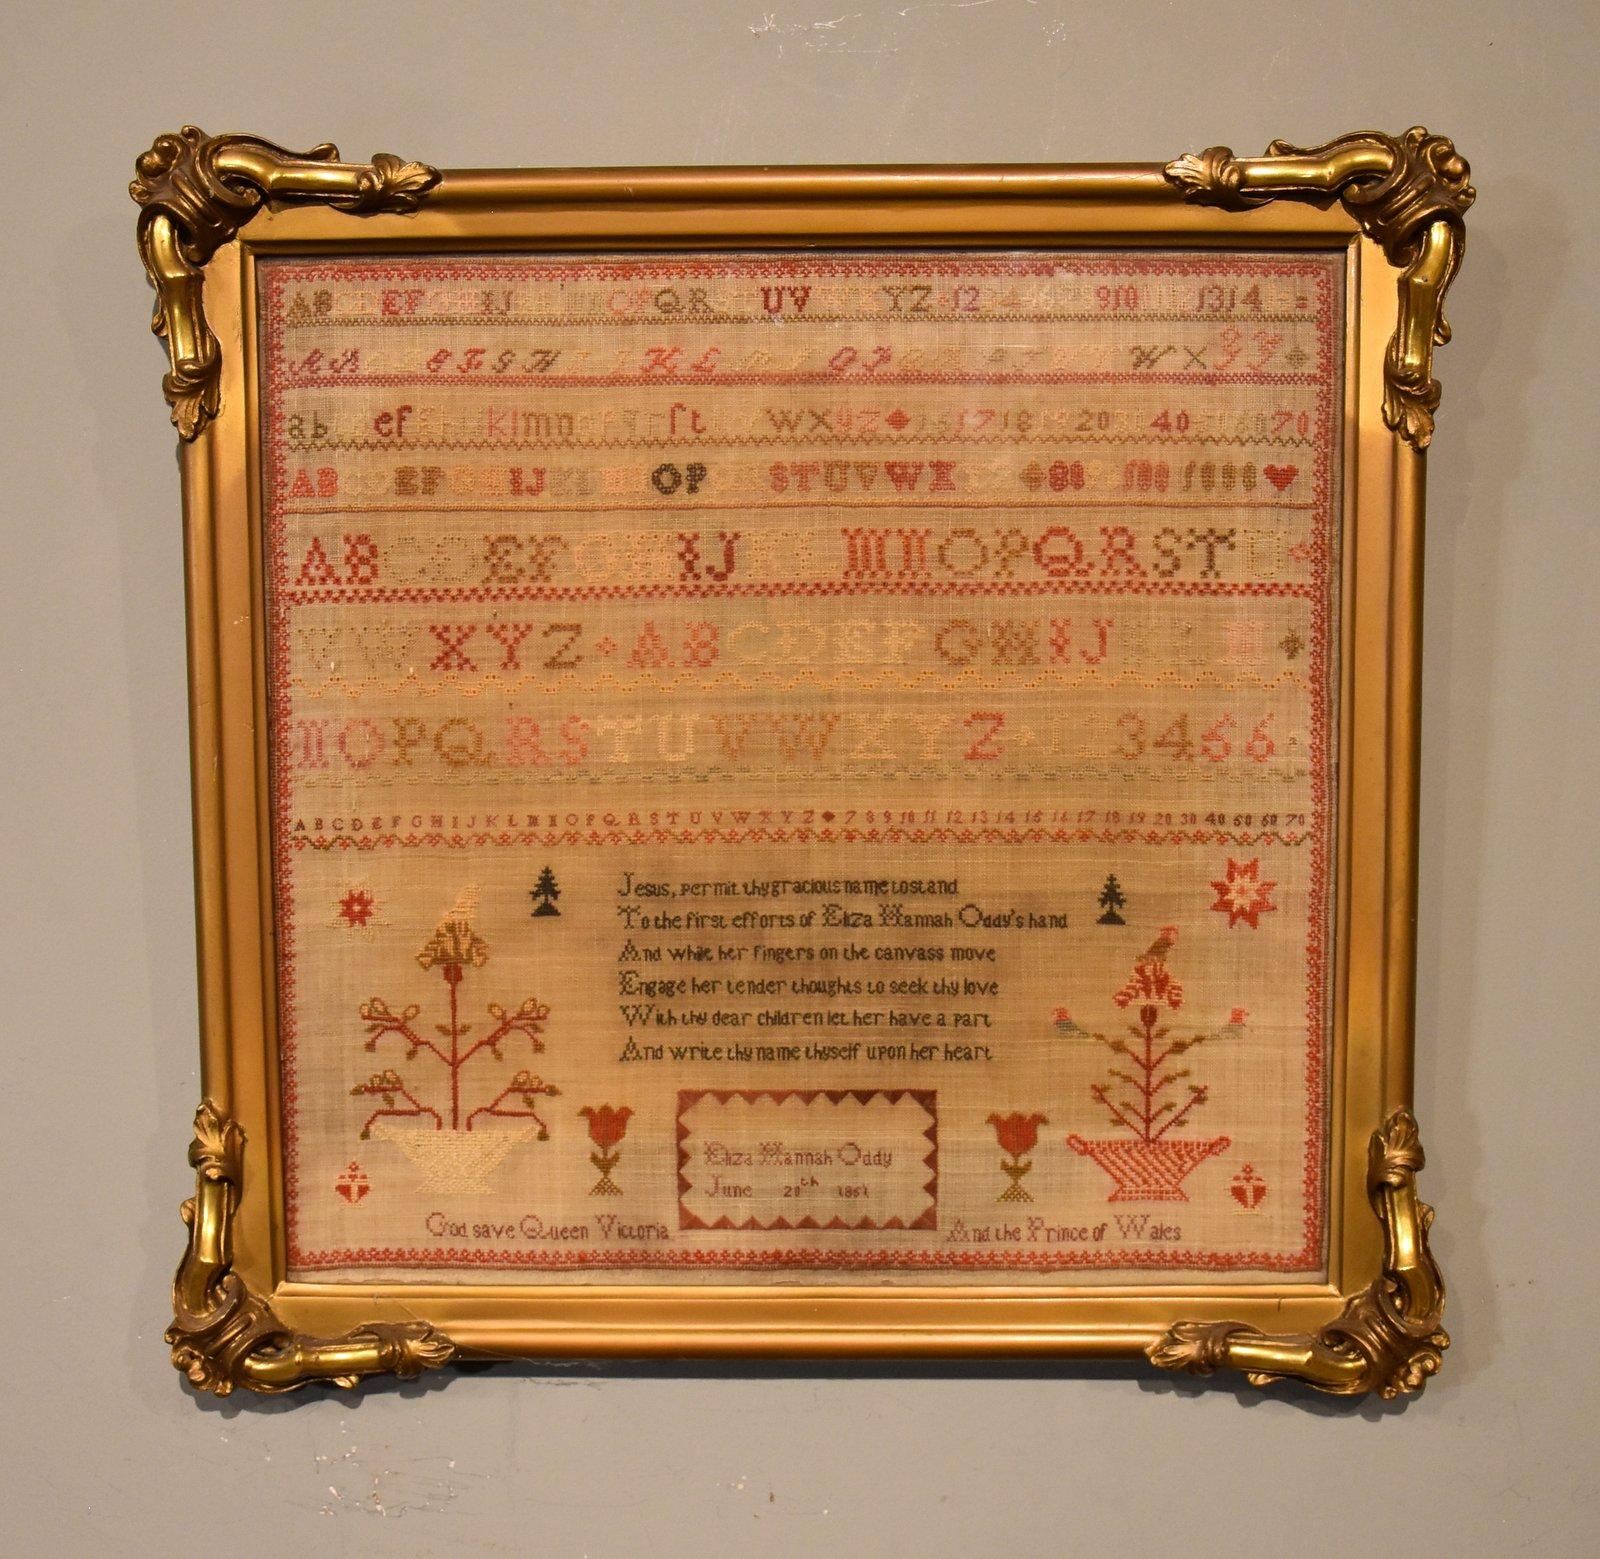 Ein Mustertuch des 19. Jahrhunderts von  Eliza Hanna Oddy 20. Juni 1861 im Originalrahmen

Abmessungen gerahmt:
Höhe 15" x Breite 16"

Alle Artikel, die wir zum Verkauf anbieten, wurden so genau wie möglich beschrieben und befinden sich in